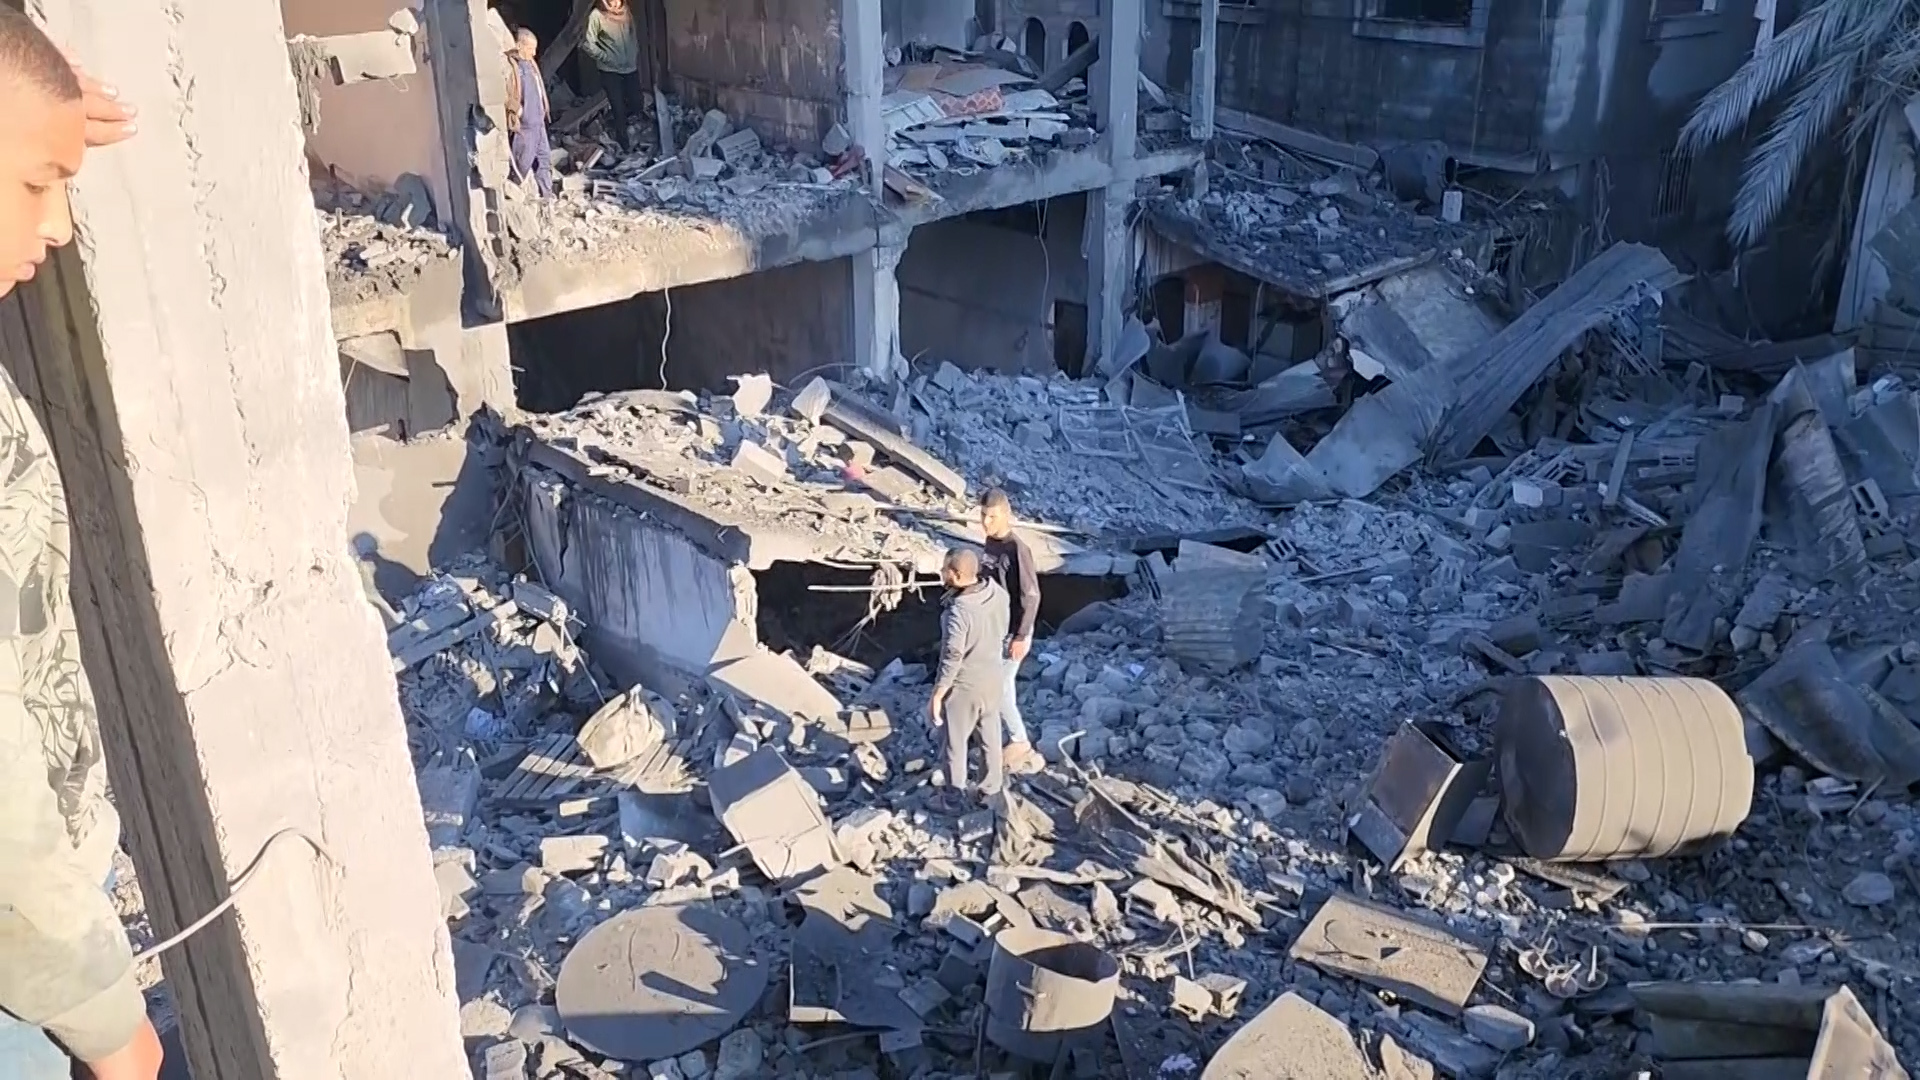 دمار كبير بعد قصف إسرائيلي لمربع سكني شرقي رفح | البرامج – البوكس نيوز